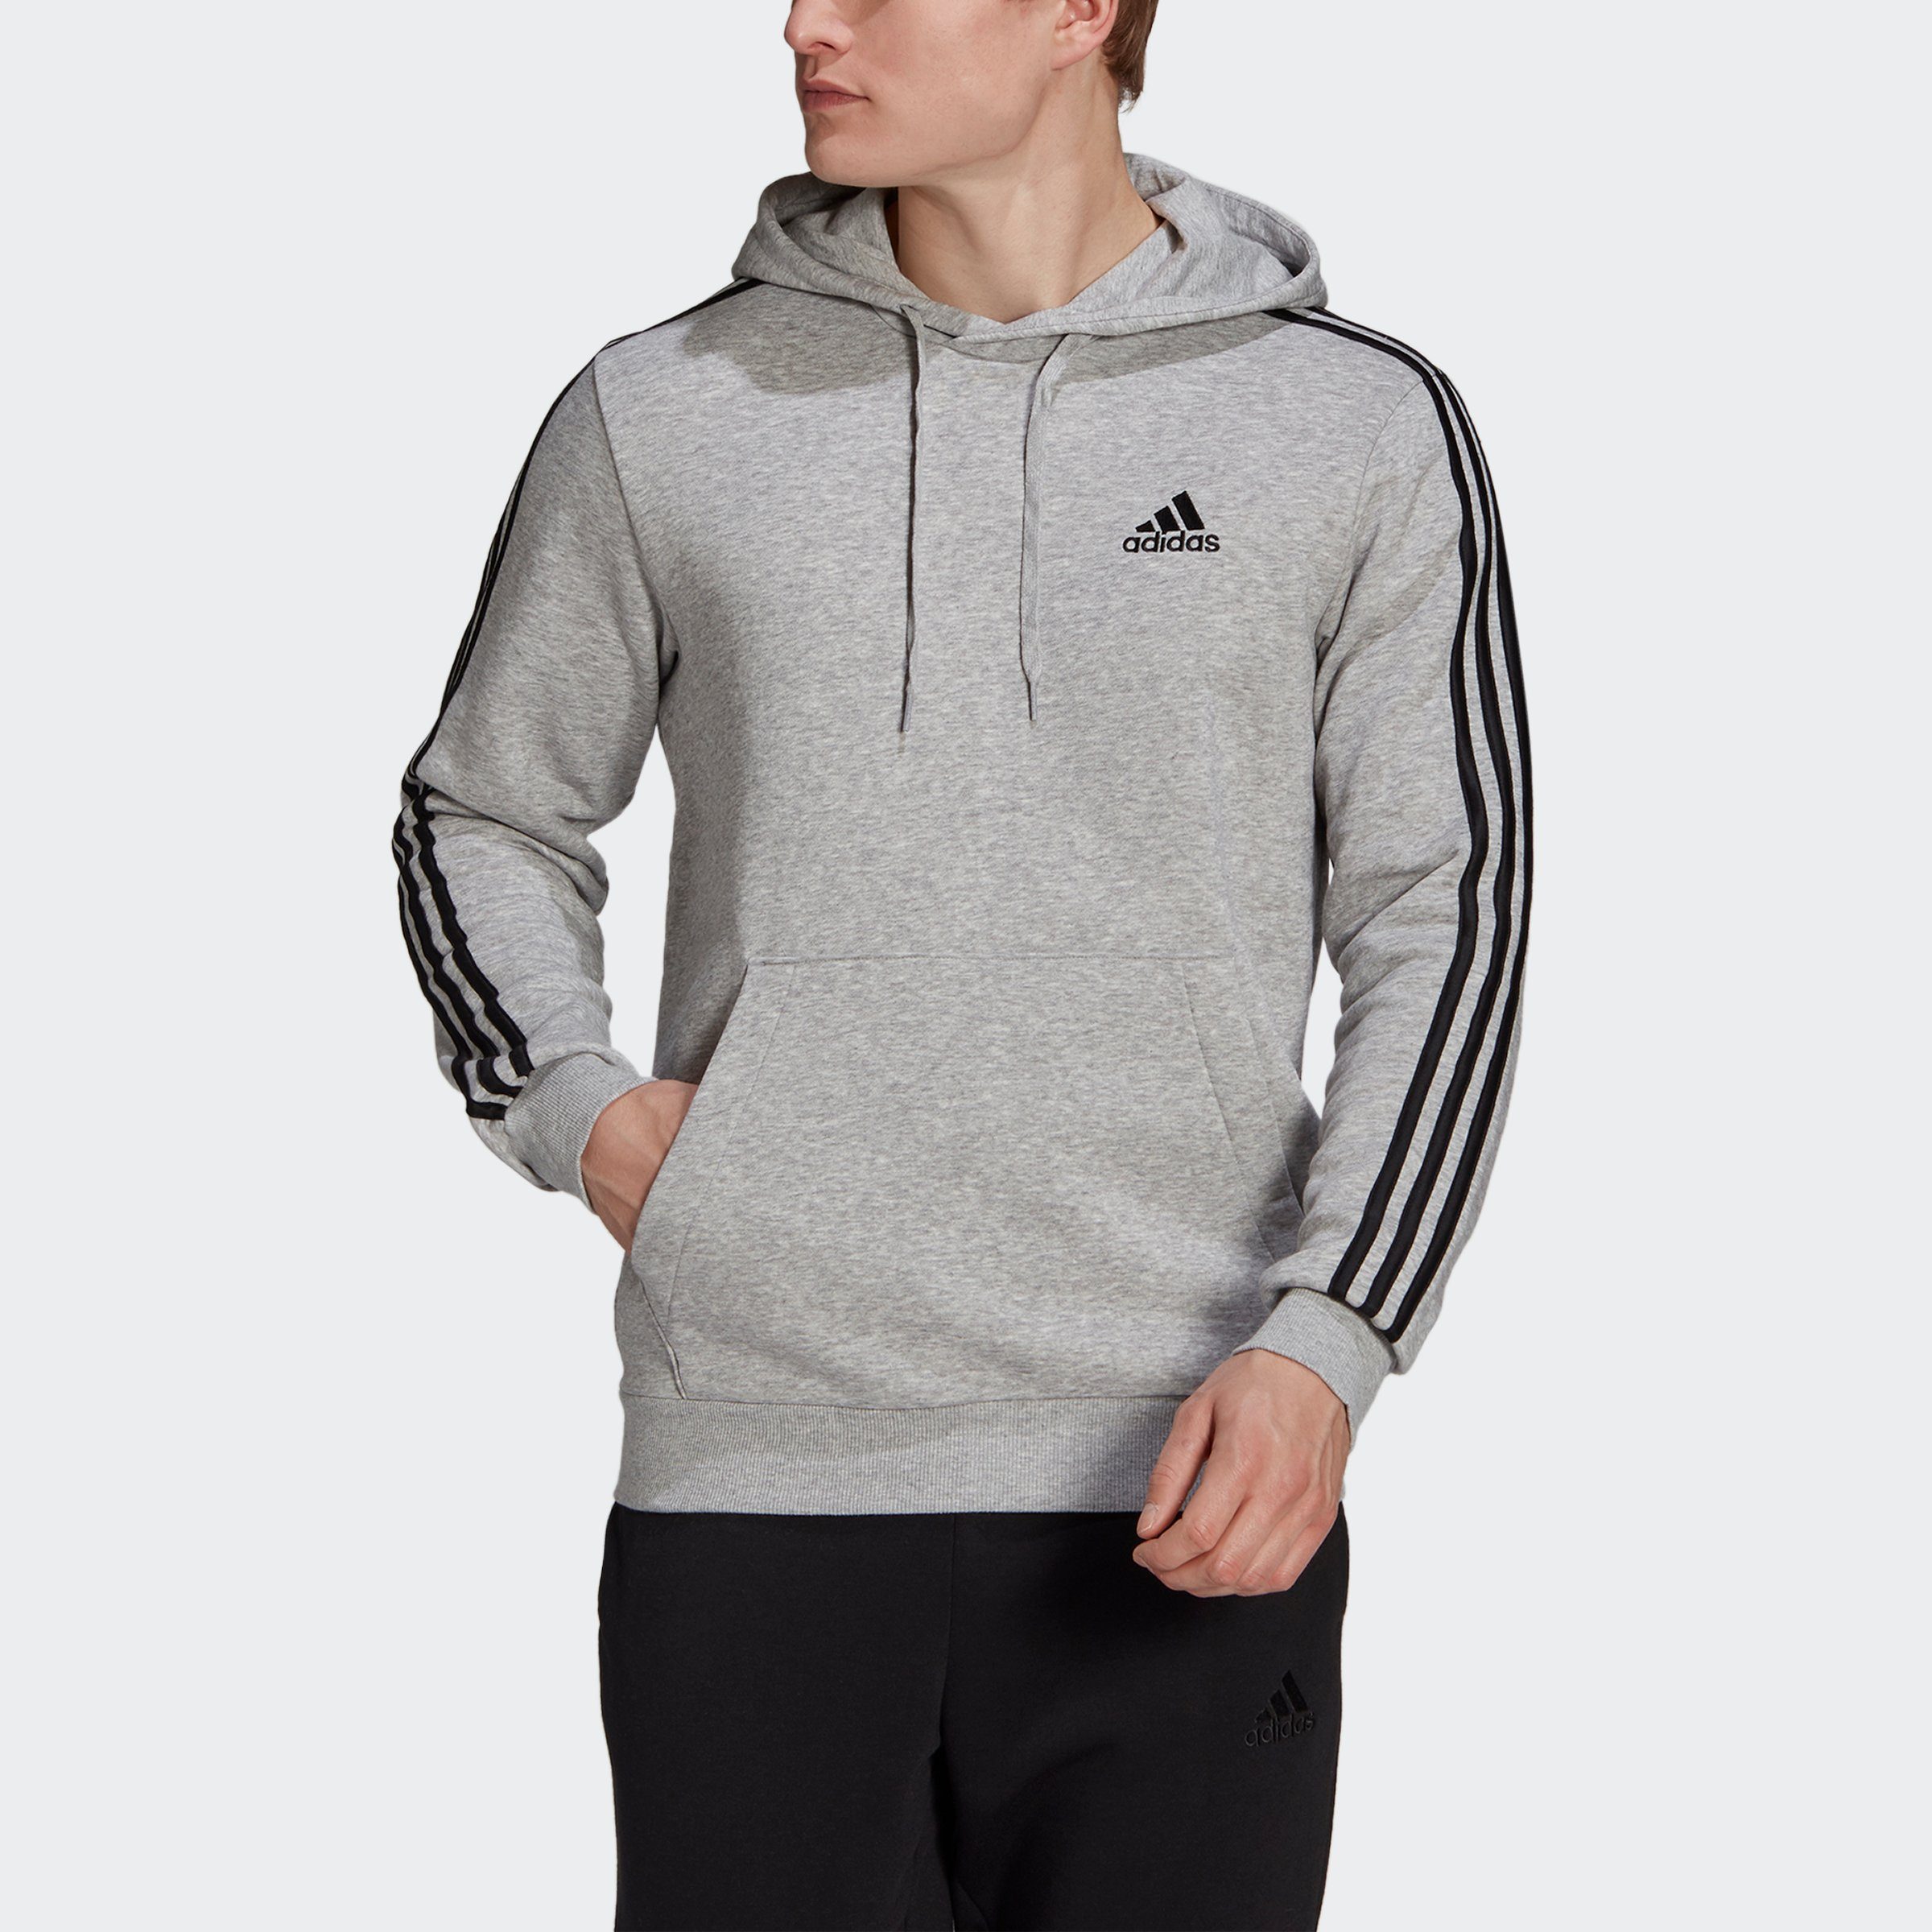 adidas Sportswear Sweatshirt ESSENTIALS Medium FLEECE Black Grey / Heather 3STREIFEN HOODIE